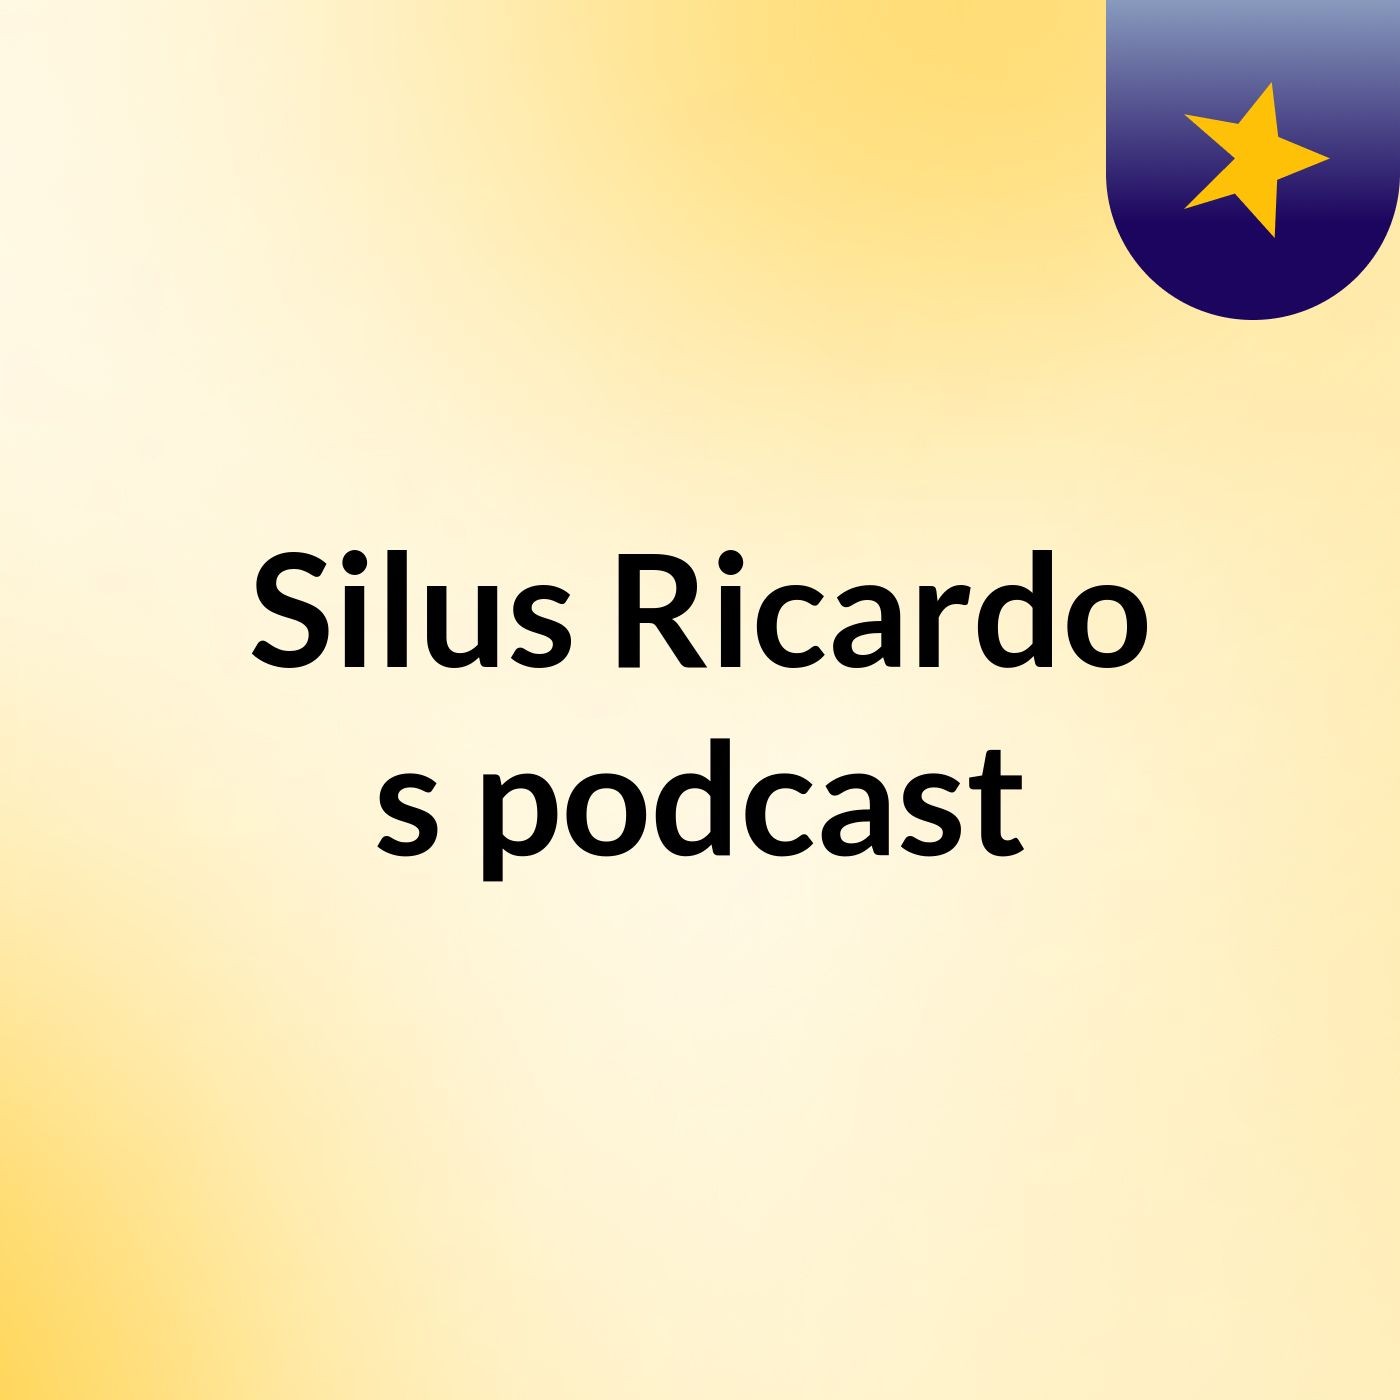 Silus Ricardo's podcast